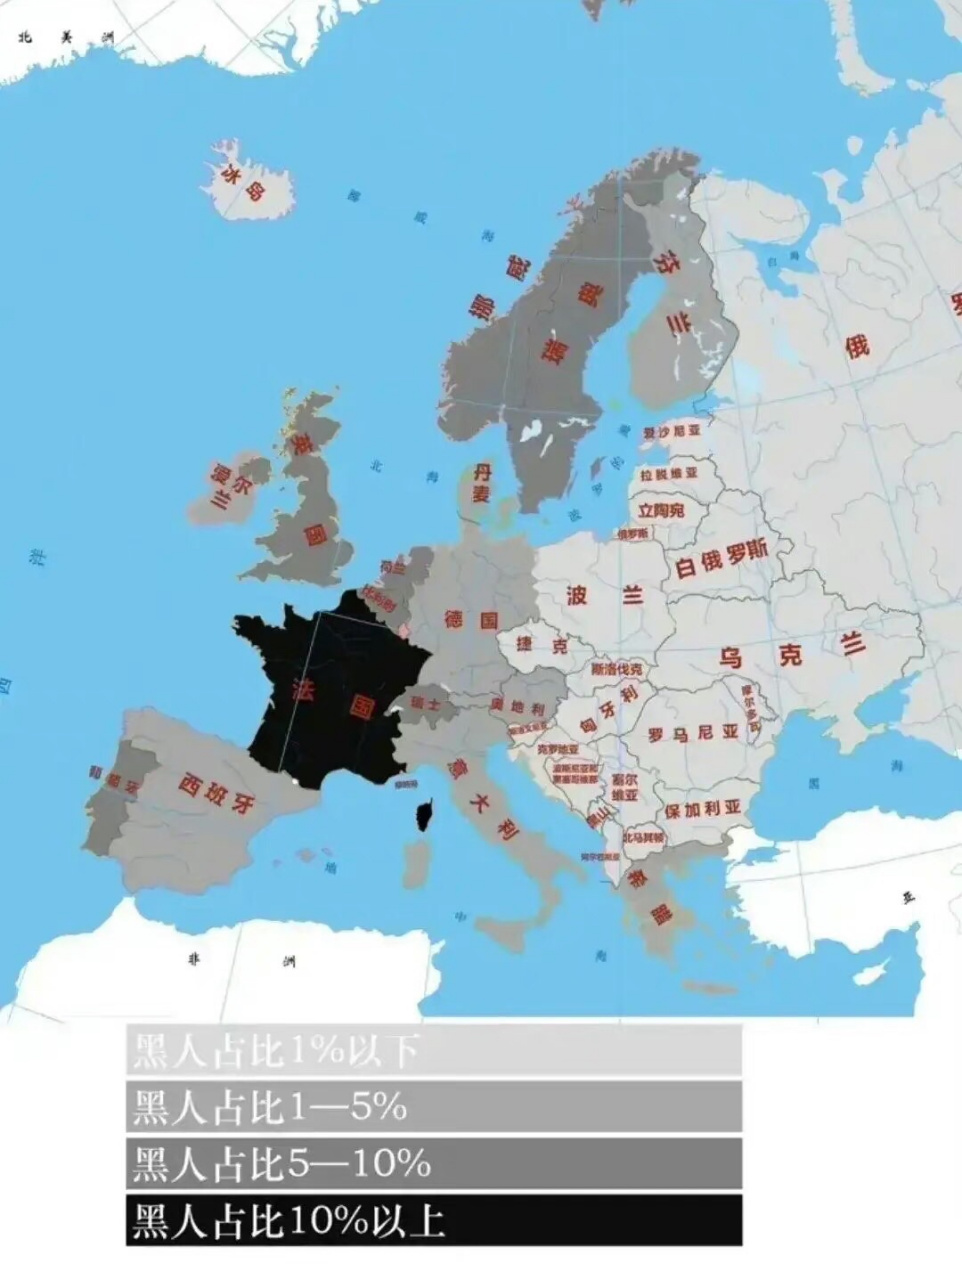 欧洲各国黑人人口比例